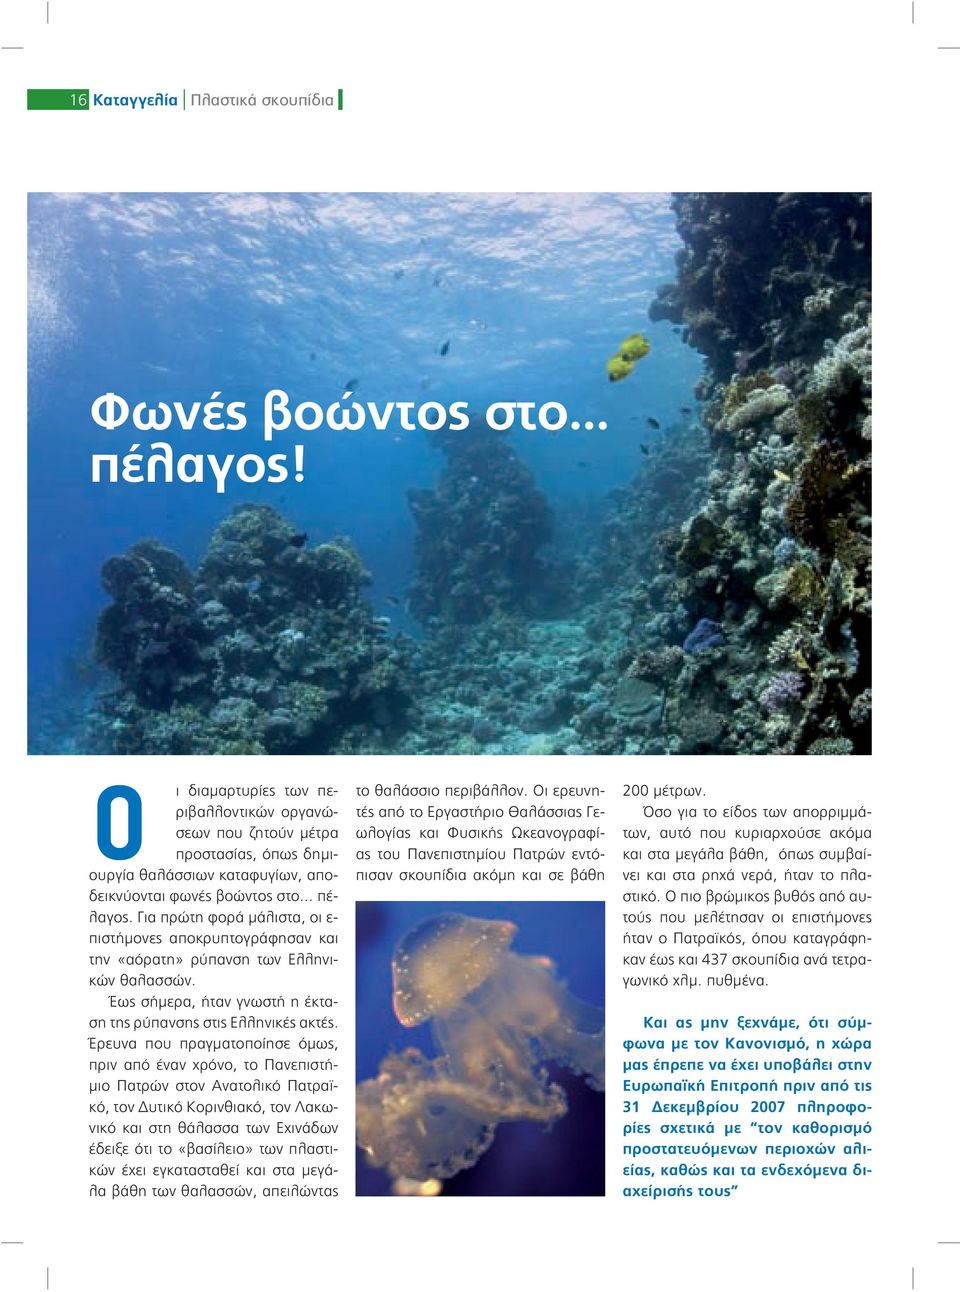 Για πρώτη φορά μάλιστα, οι ε- πιστήμονες αποκρυπτογράφησαν και την «αόρατη» ρύπανση των Ελληνικών θαλασσών. Έως σήμερα, ήταν γνωστή η έκταση της ρύπανσης στις Ελληνικές ακτές.